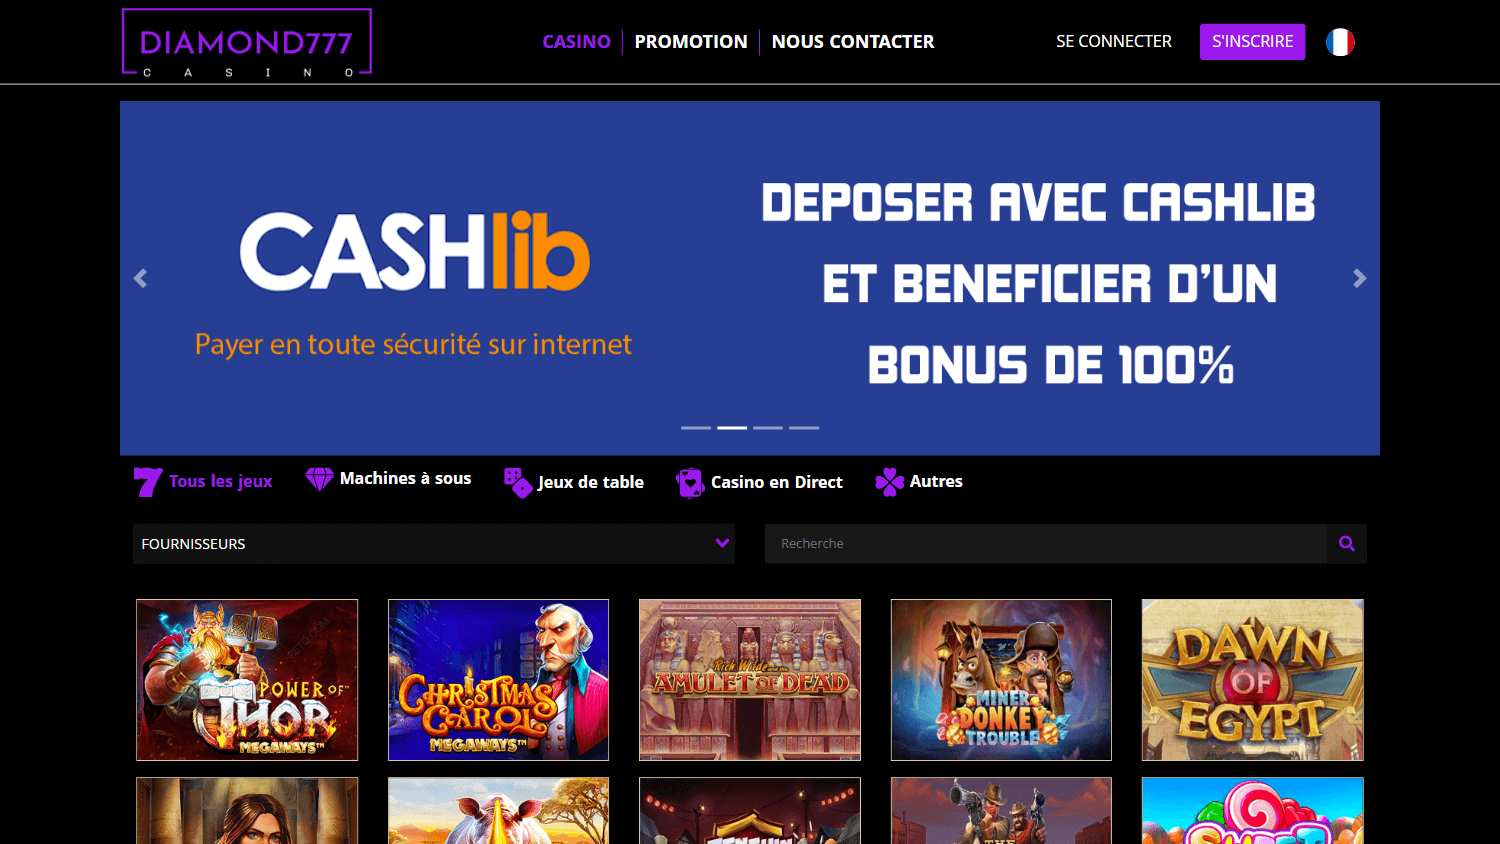 diamond_777_casino_homepage_desktop